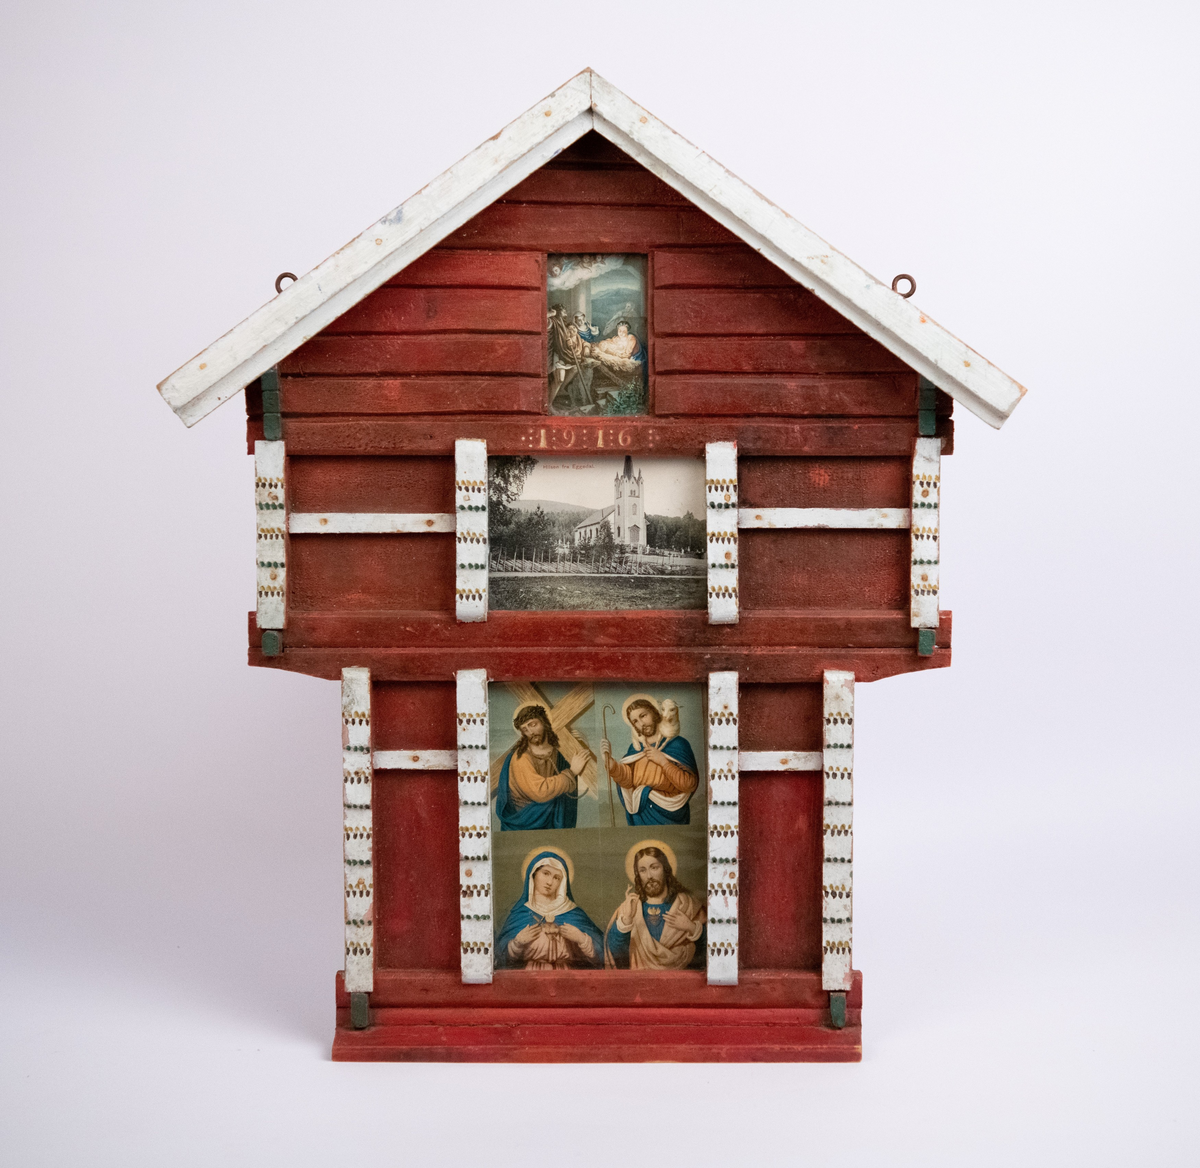 Stabbursformet ramme, eller "hus-alter" med religiøse motiver, deriblant et postkort med motiv av Eggedal kirke. Rødmalt og staffert i hvitt, grønt og brunt. Påmalt årstall 1916.